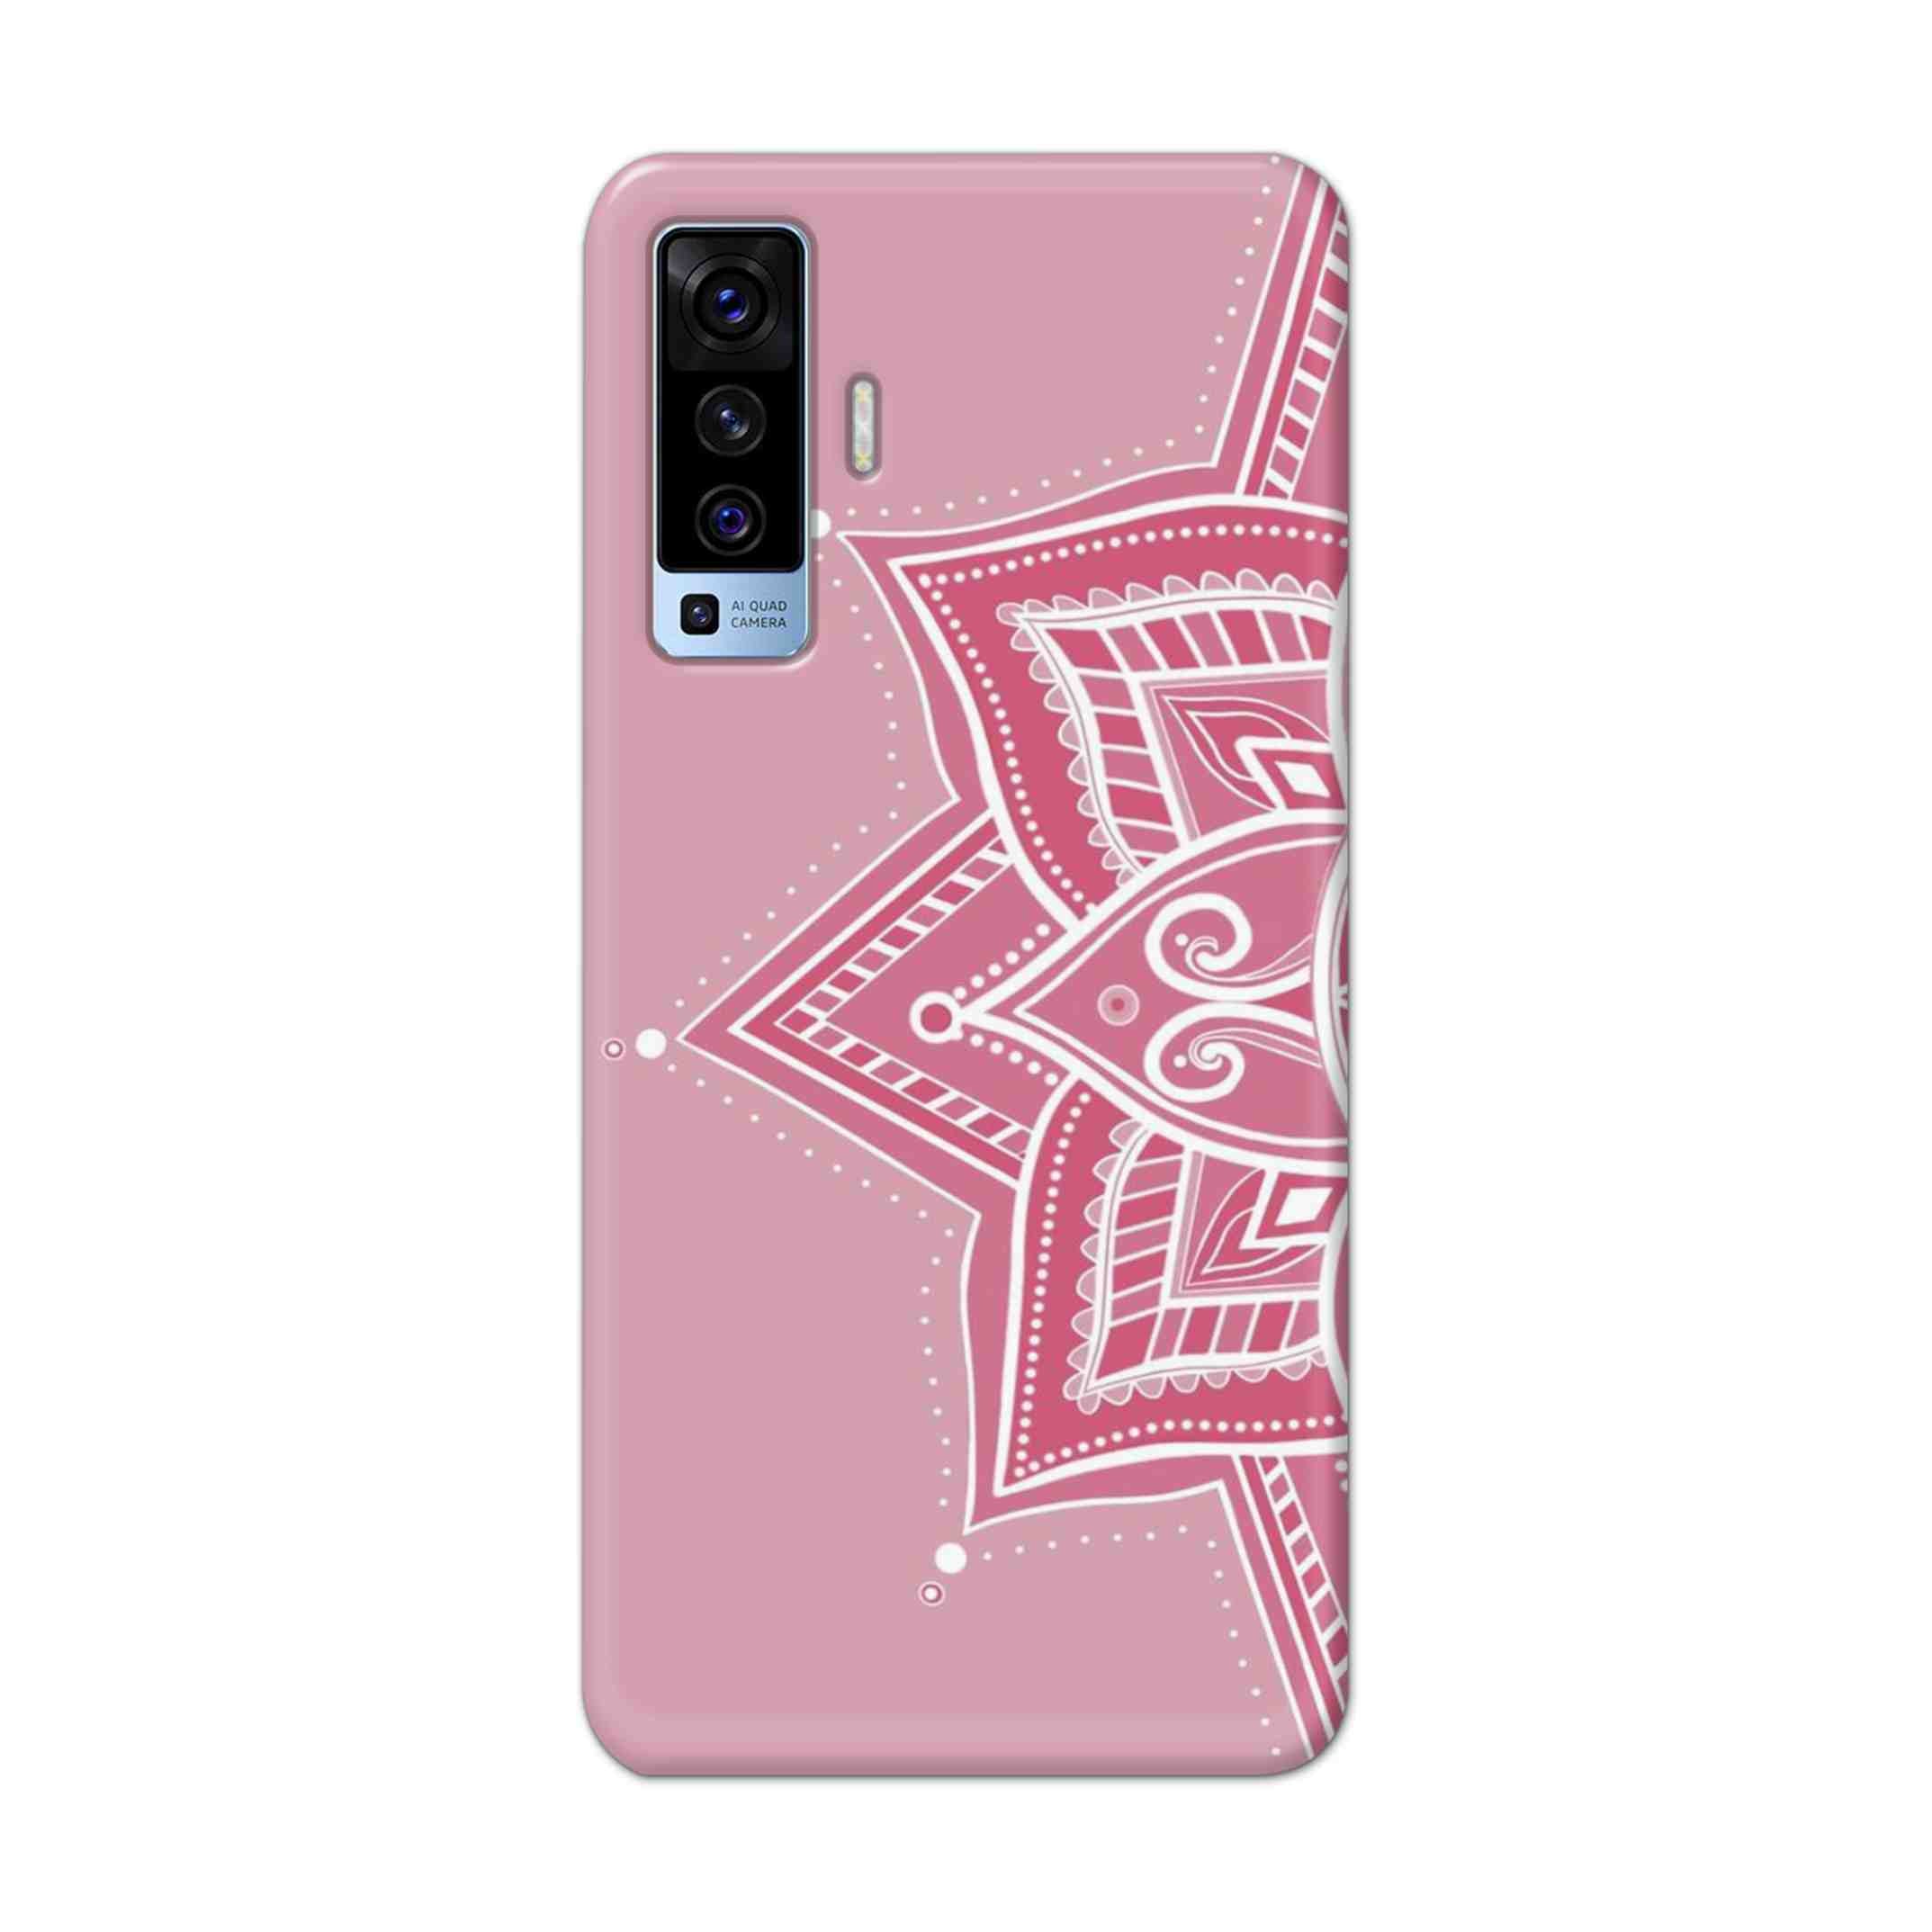 Buy Pink Rangoli Hard Back Mobile Phone Case Cover For Vivo X50 Online